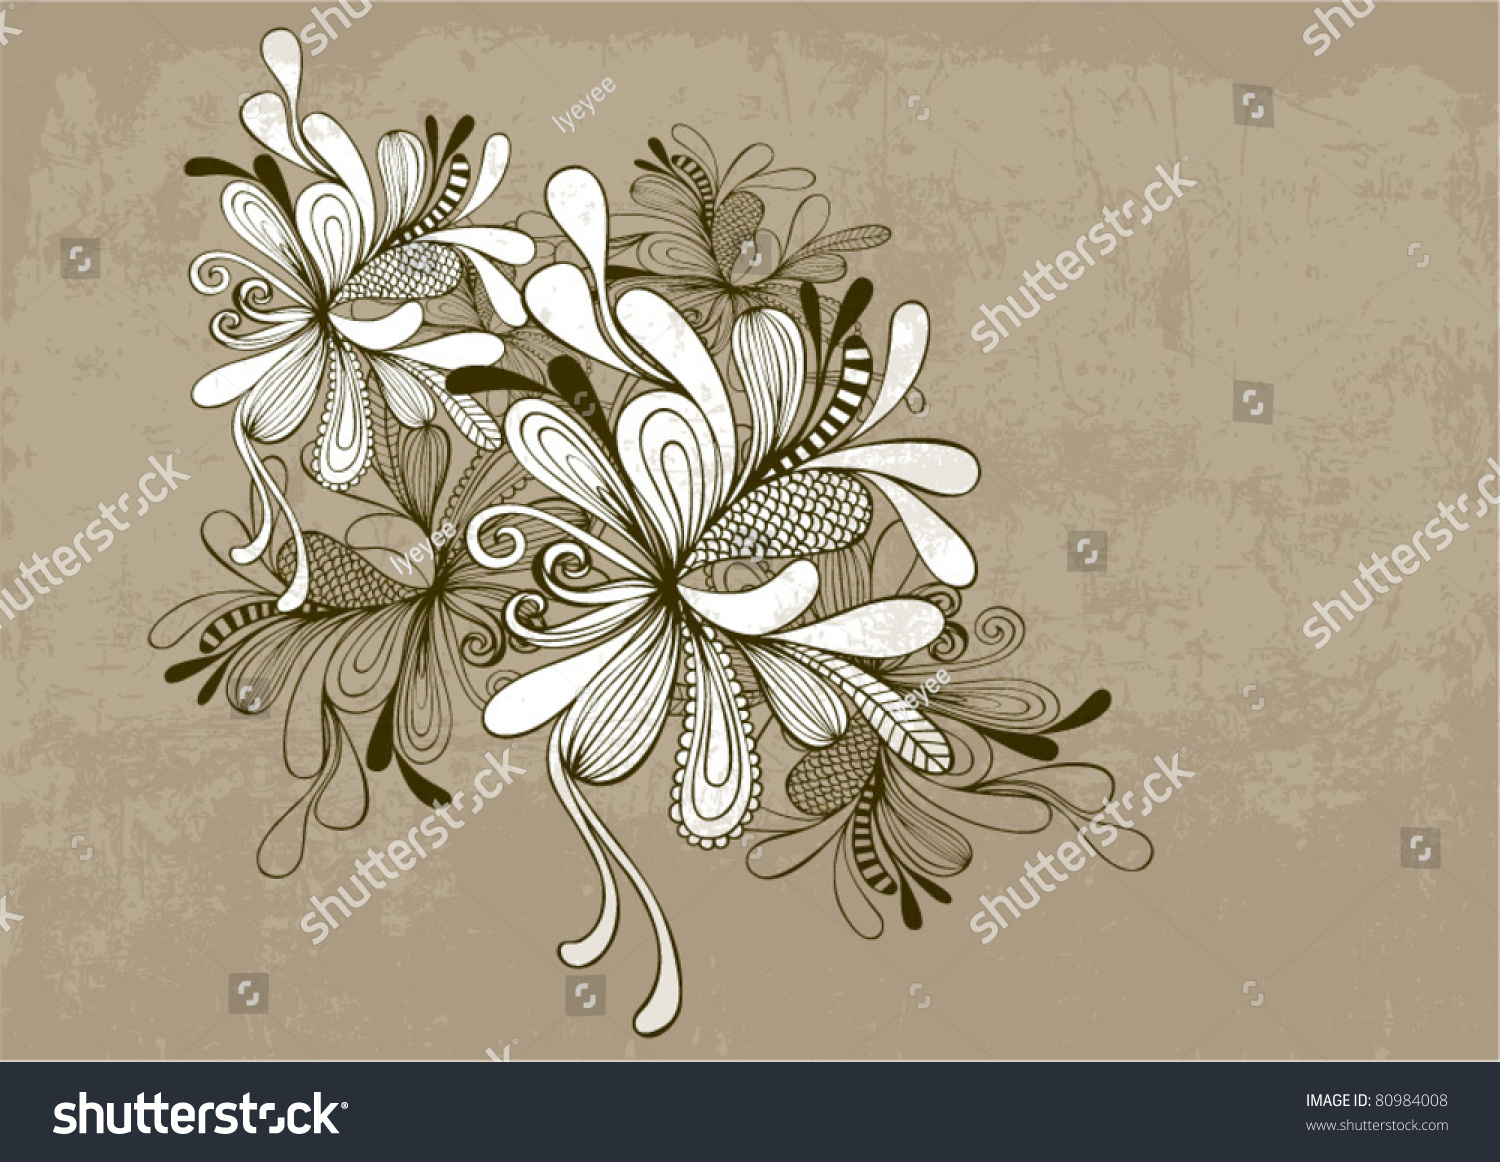 Floral Vector Black & White - 80984008 : Shutterstock